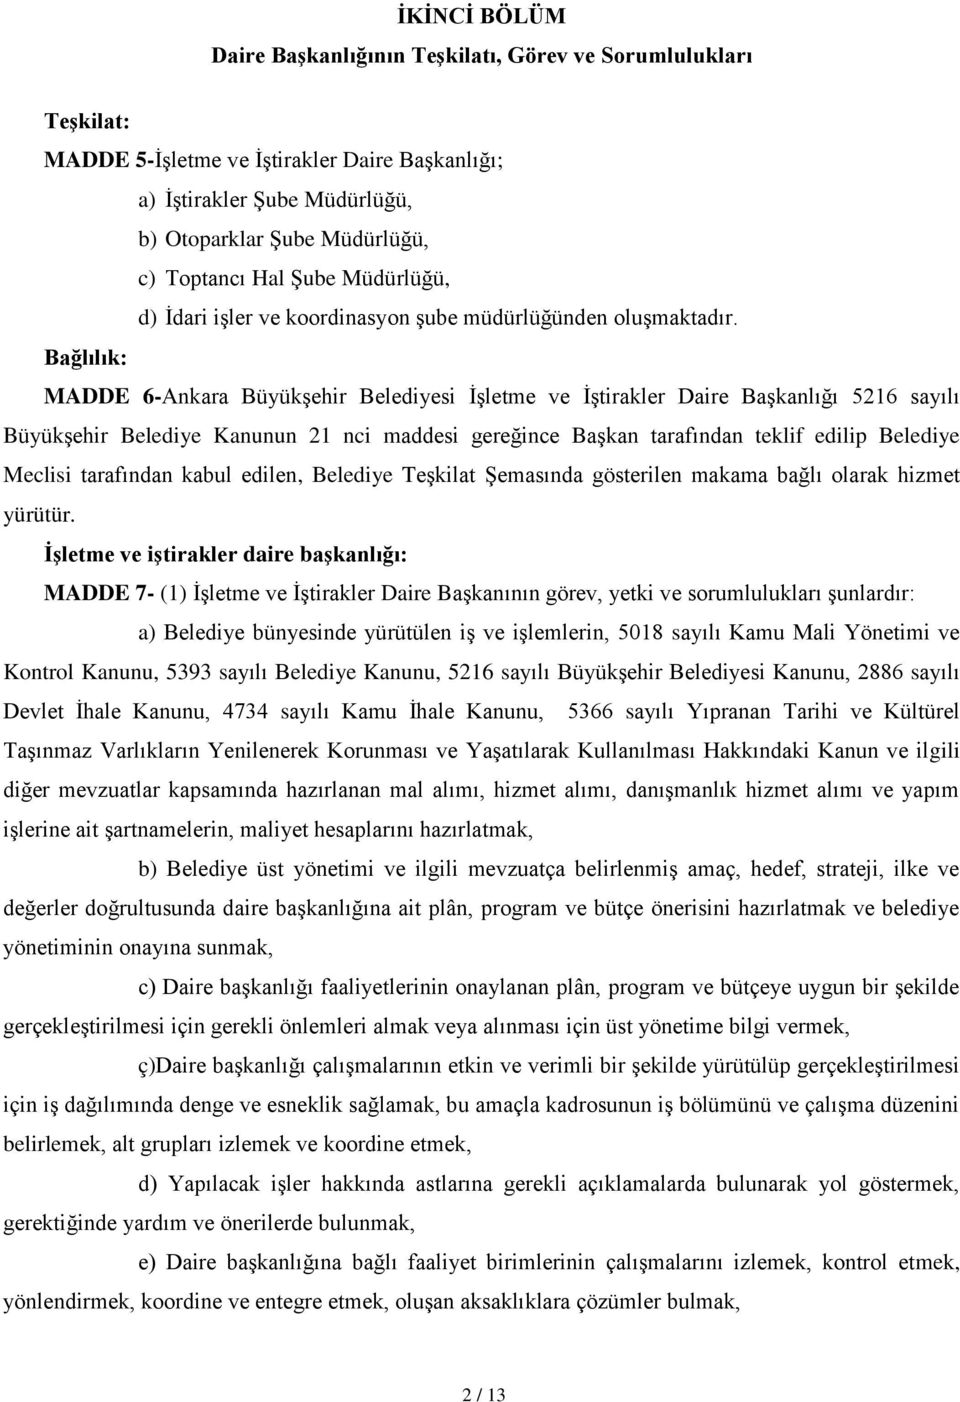 Bağlılık: MADDE 6-Ankara Büyükşehir Belediyesi İşletme ve İştirakler Daire Başkanlığı 5216 sayılı Büyükşehir Belediye Kanunun 21 nci maddesi gereğince Başkan tarafından teklif edilip Belediye Meclisi